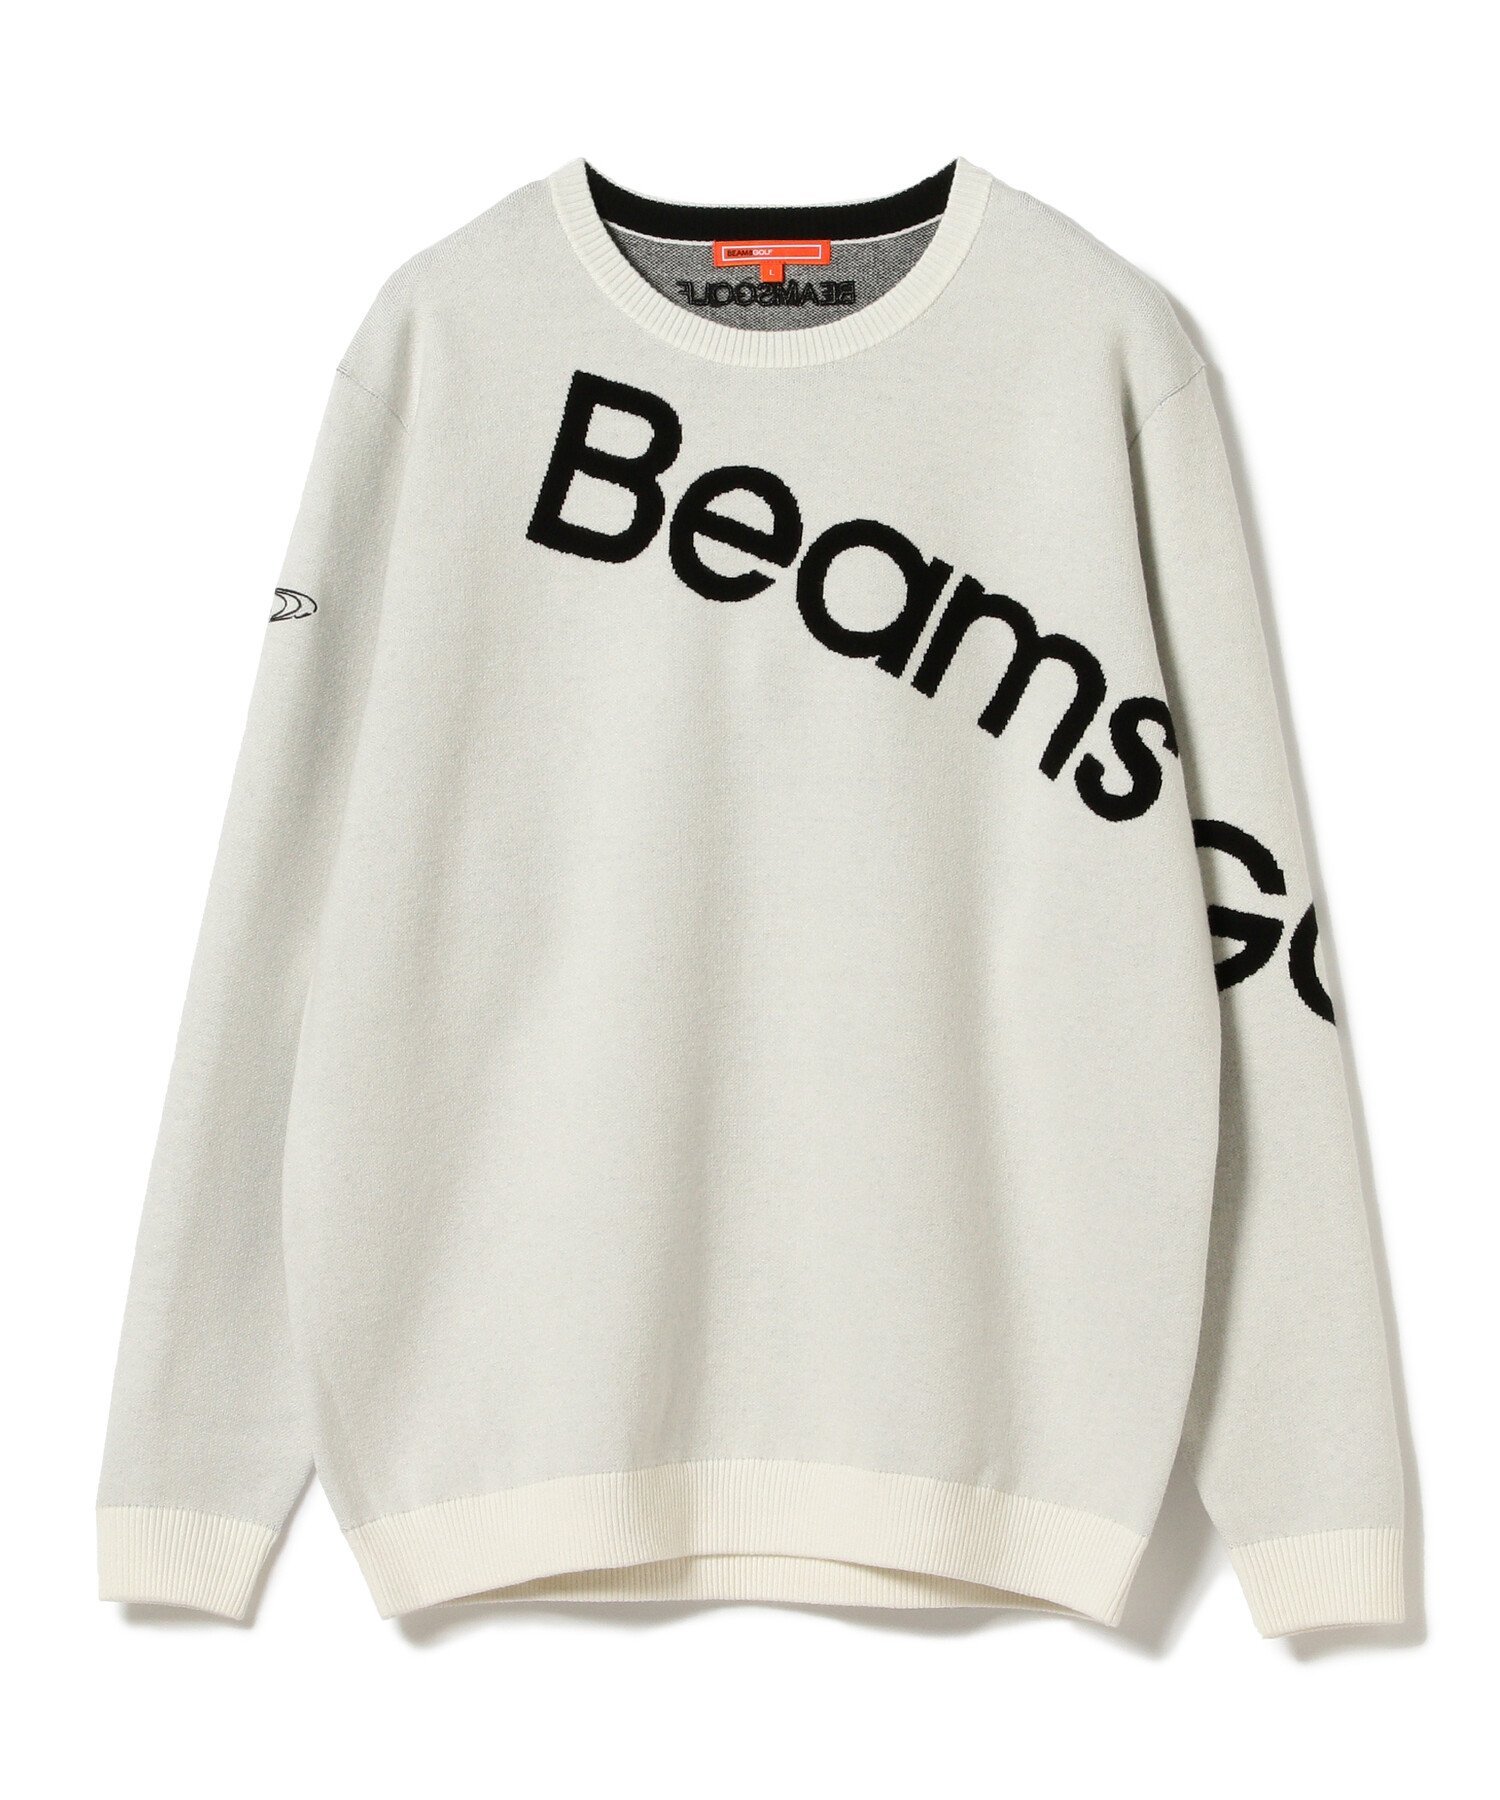 BEAMS GOLF / セパレート ロゴ セーター